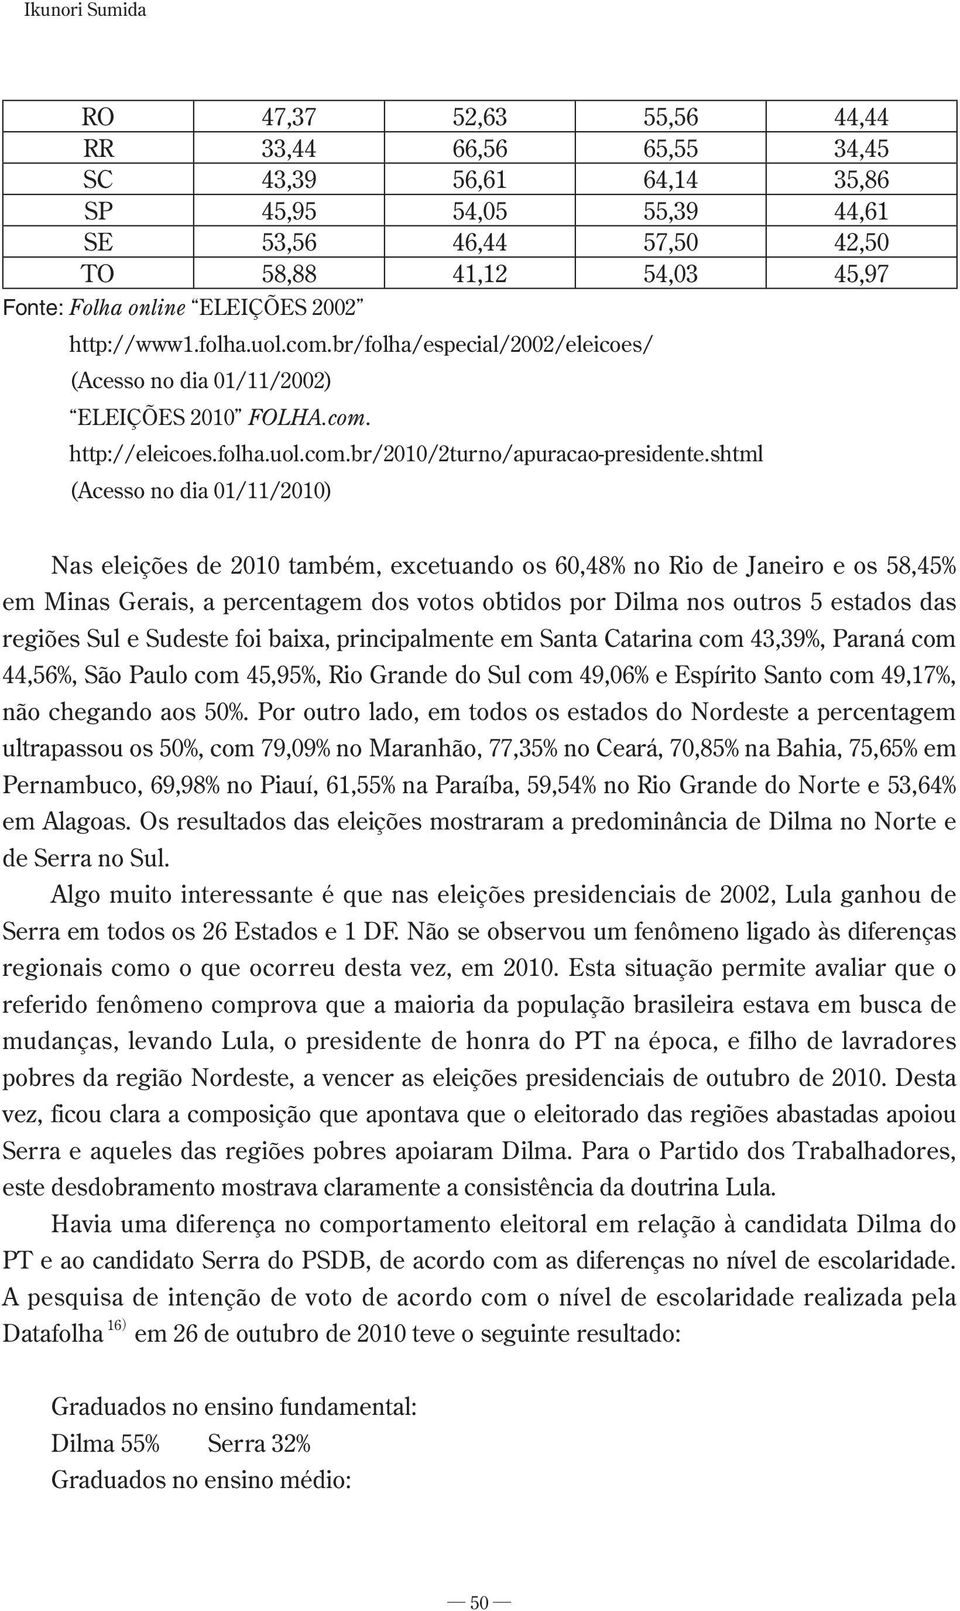 shtml (Acesso no dia 01/11/2010) Nas eleições de 2010 também, excetuando os 60,48% no Rio de Janeiro e os 58,45% em Minas Gerais, a percentagem dos votos obtidos por Dilma nos outros 5 estados das